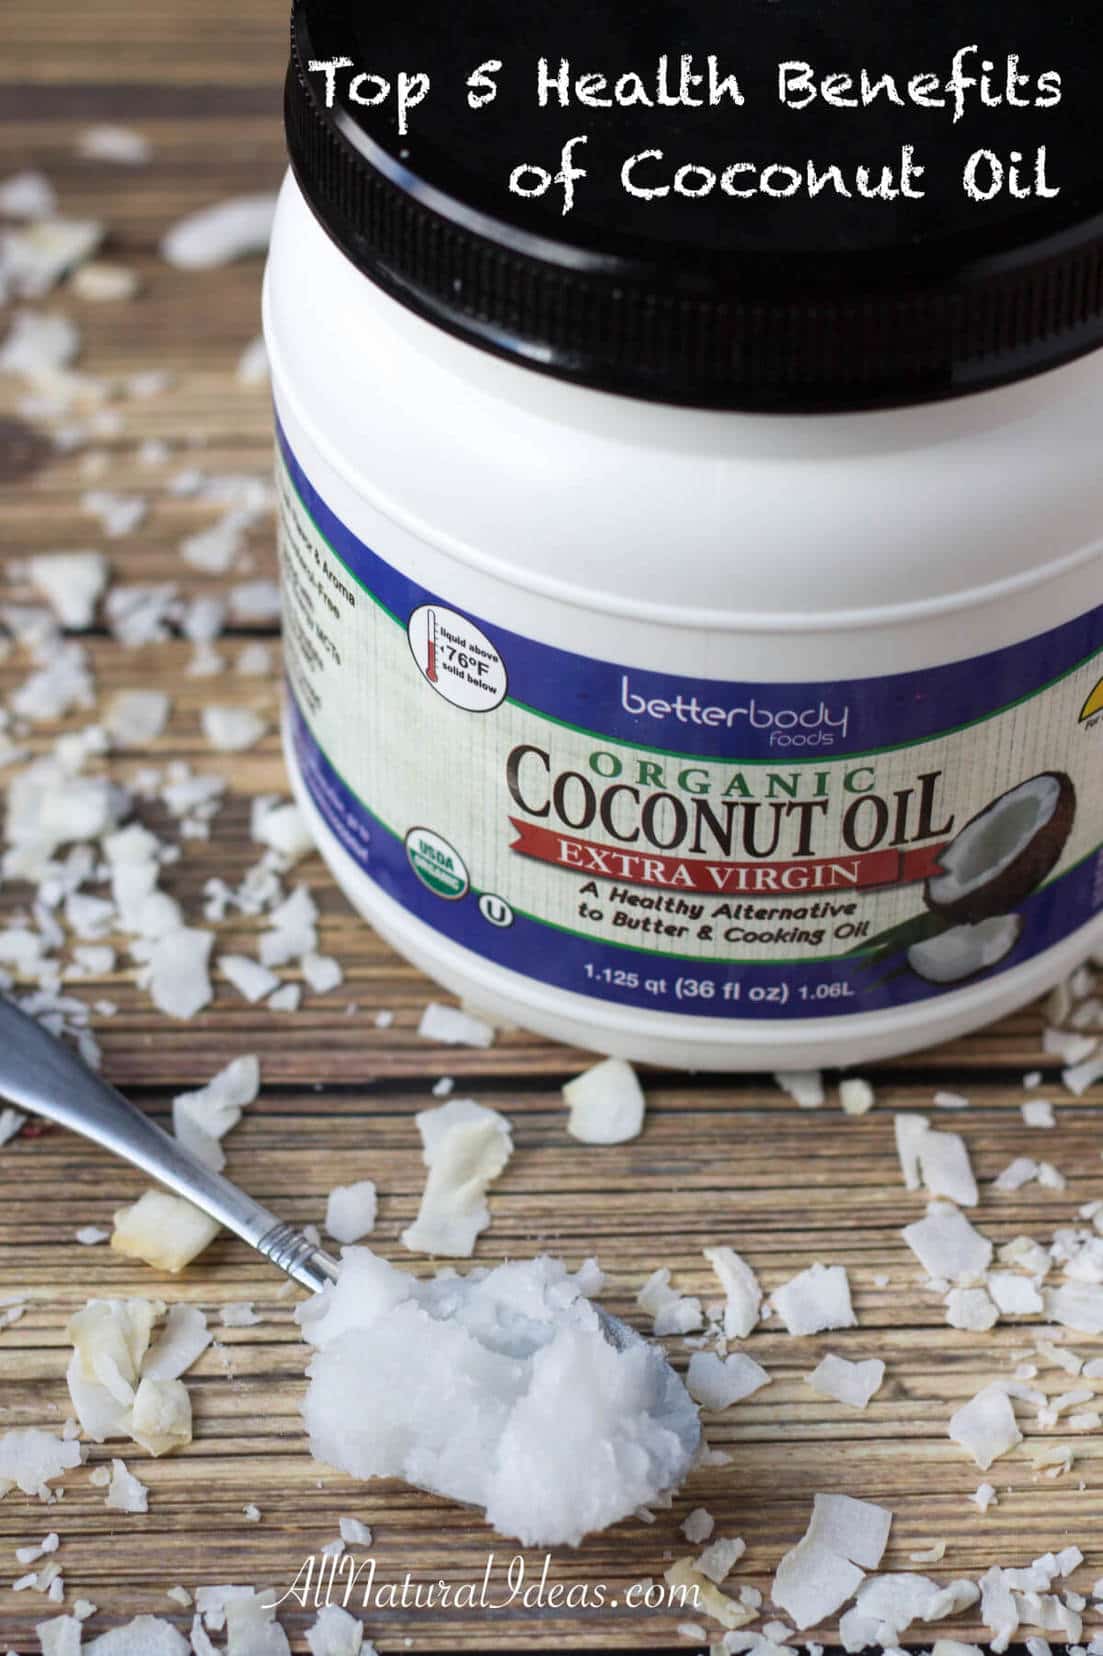 Top 5 Health Benefits of Coconut Oil